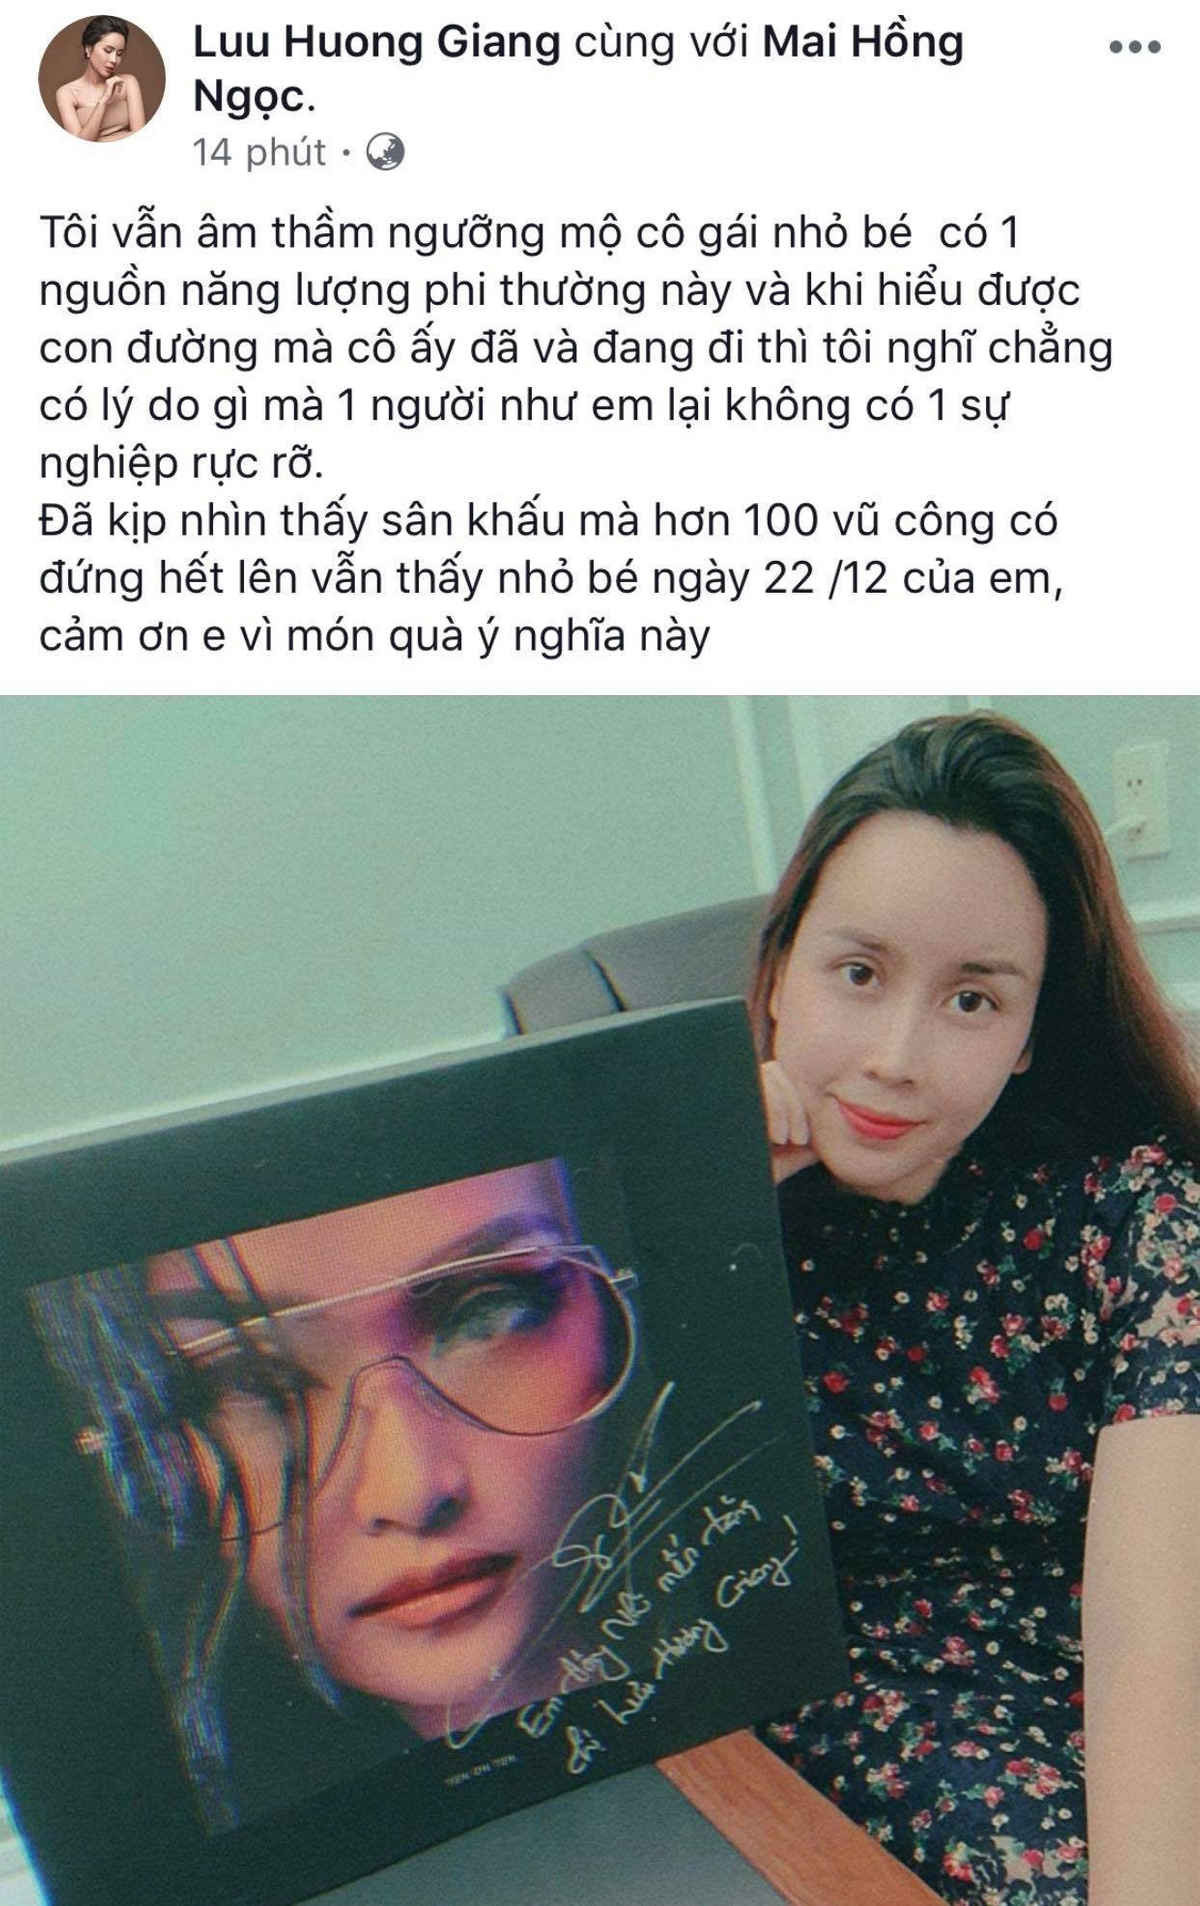 Dàn sao Việt hào hứng khoe album khủng của Đông Nhi, gửi lời chúc đặc biệt tới đồng nghiệp trước thềm liveshow 10 năm - Ảnh 4.